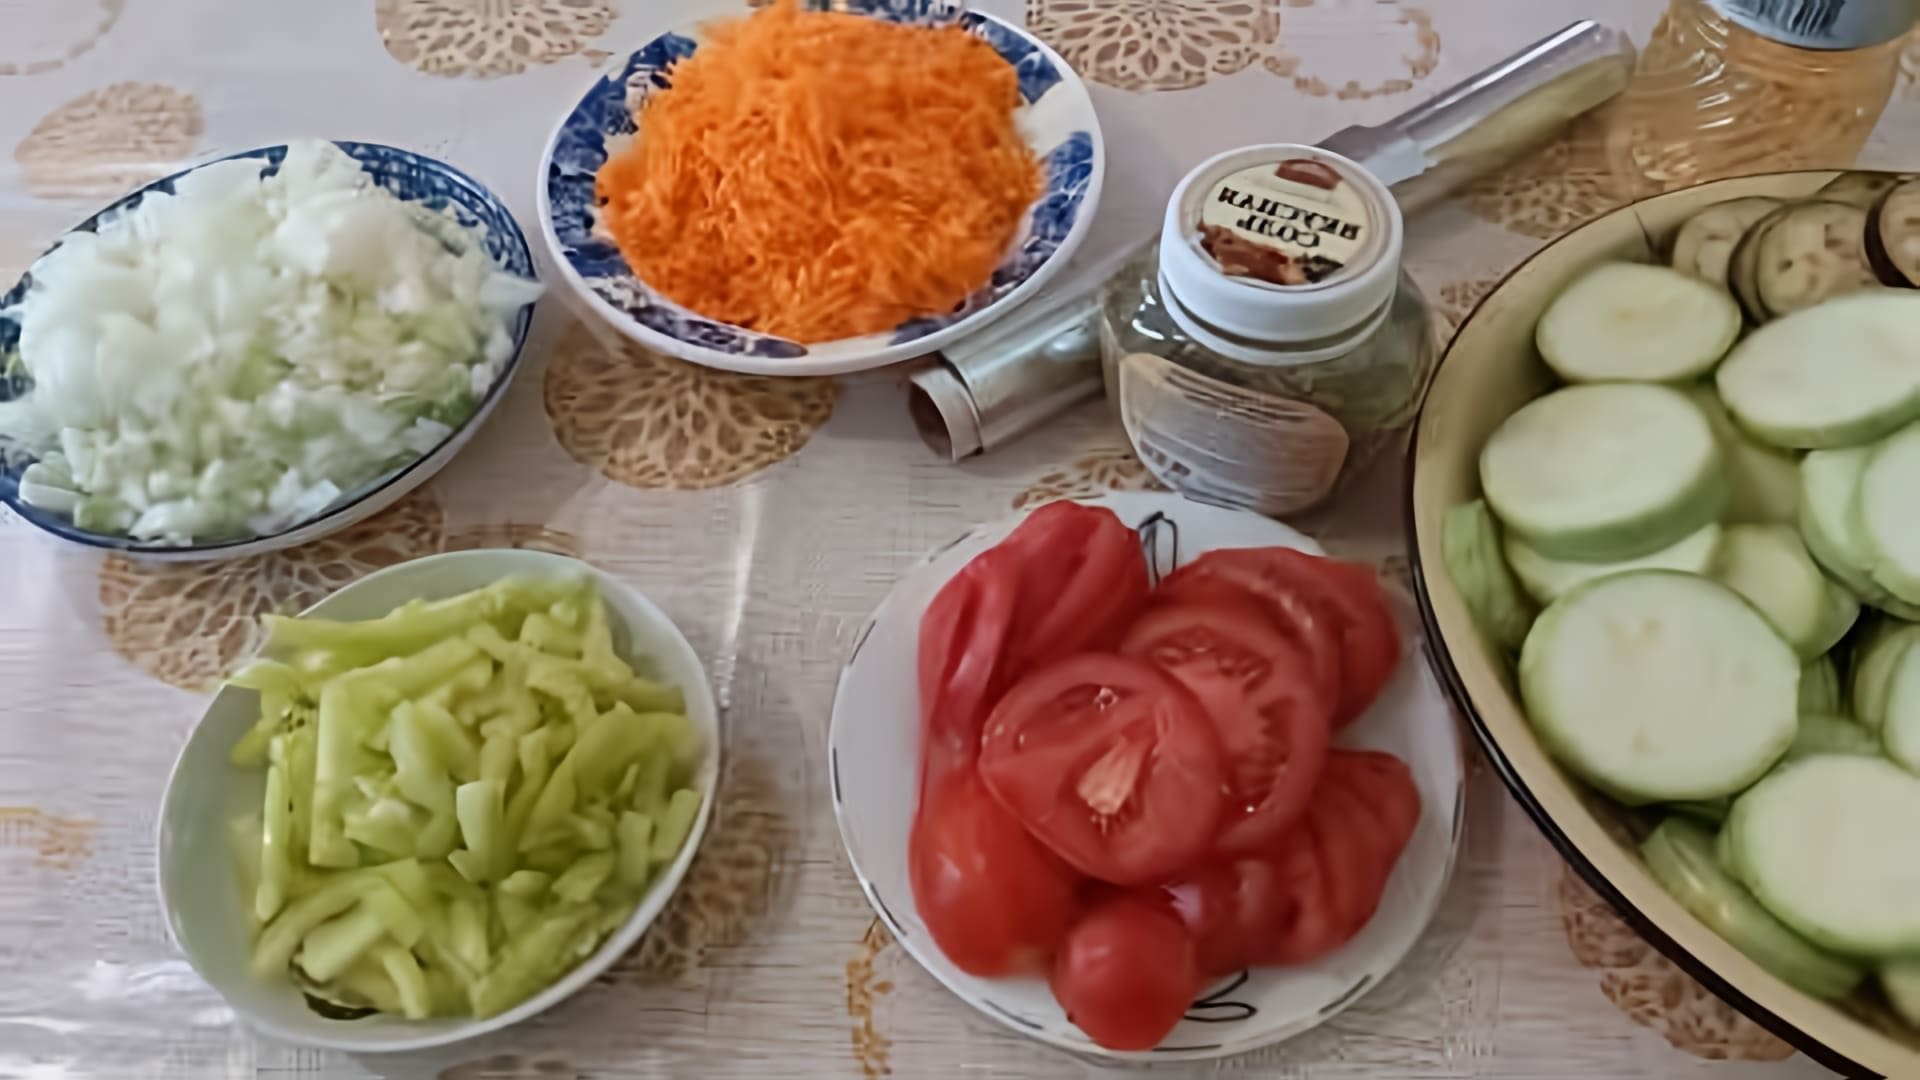 В этом видео демонстрируется процесс приготовления рататуя - блюда из овощей, которое можно консервировать на зиму или готовить на ужин